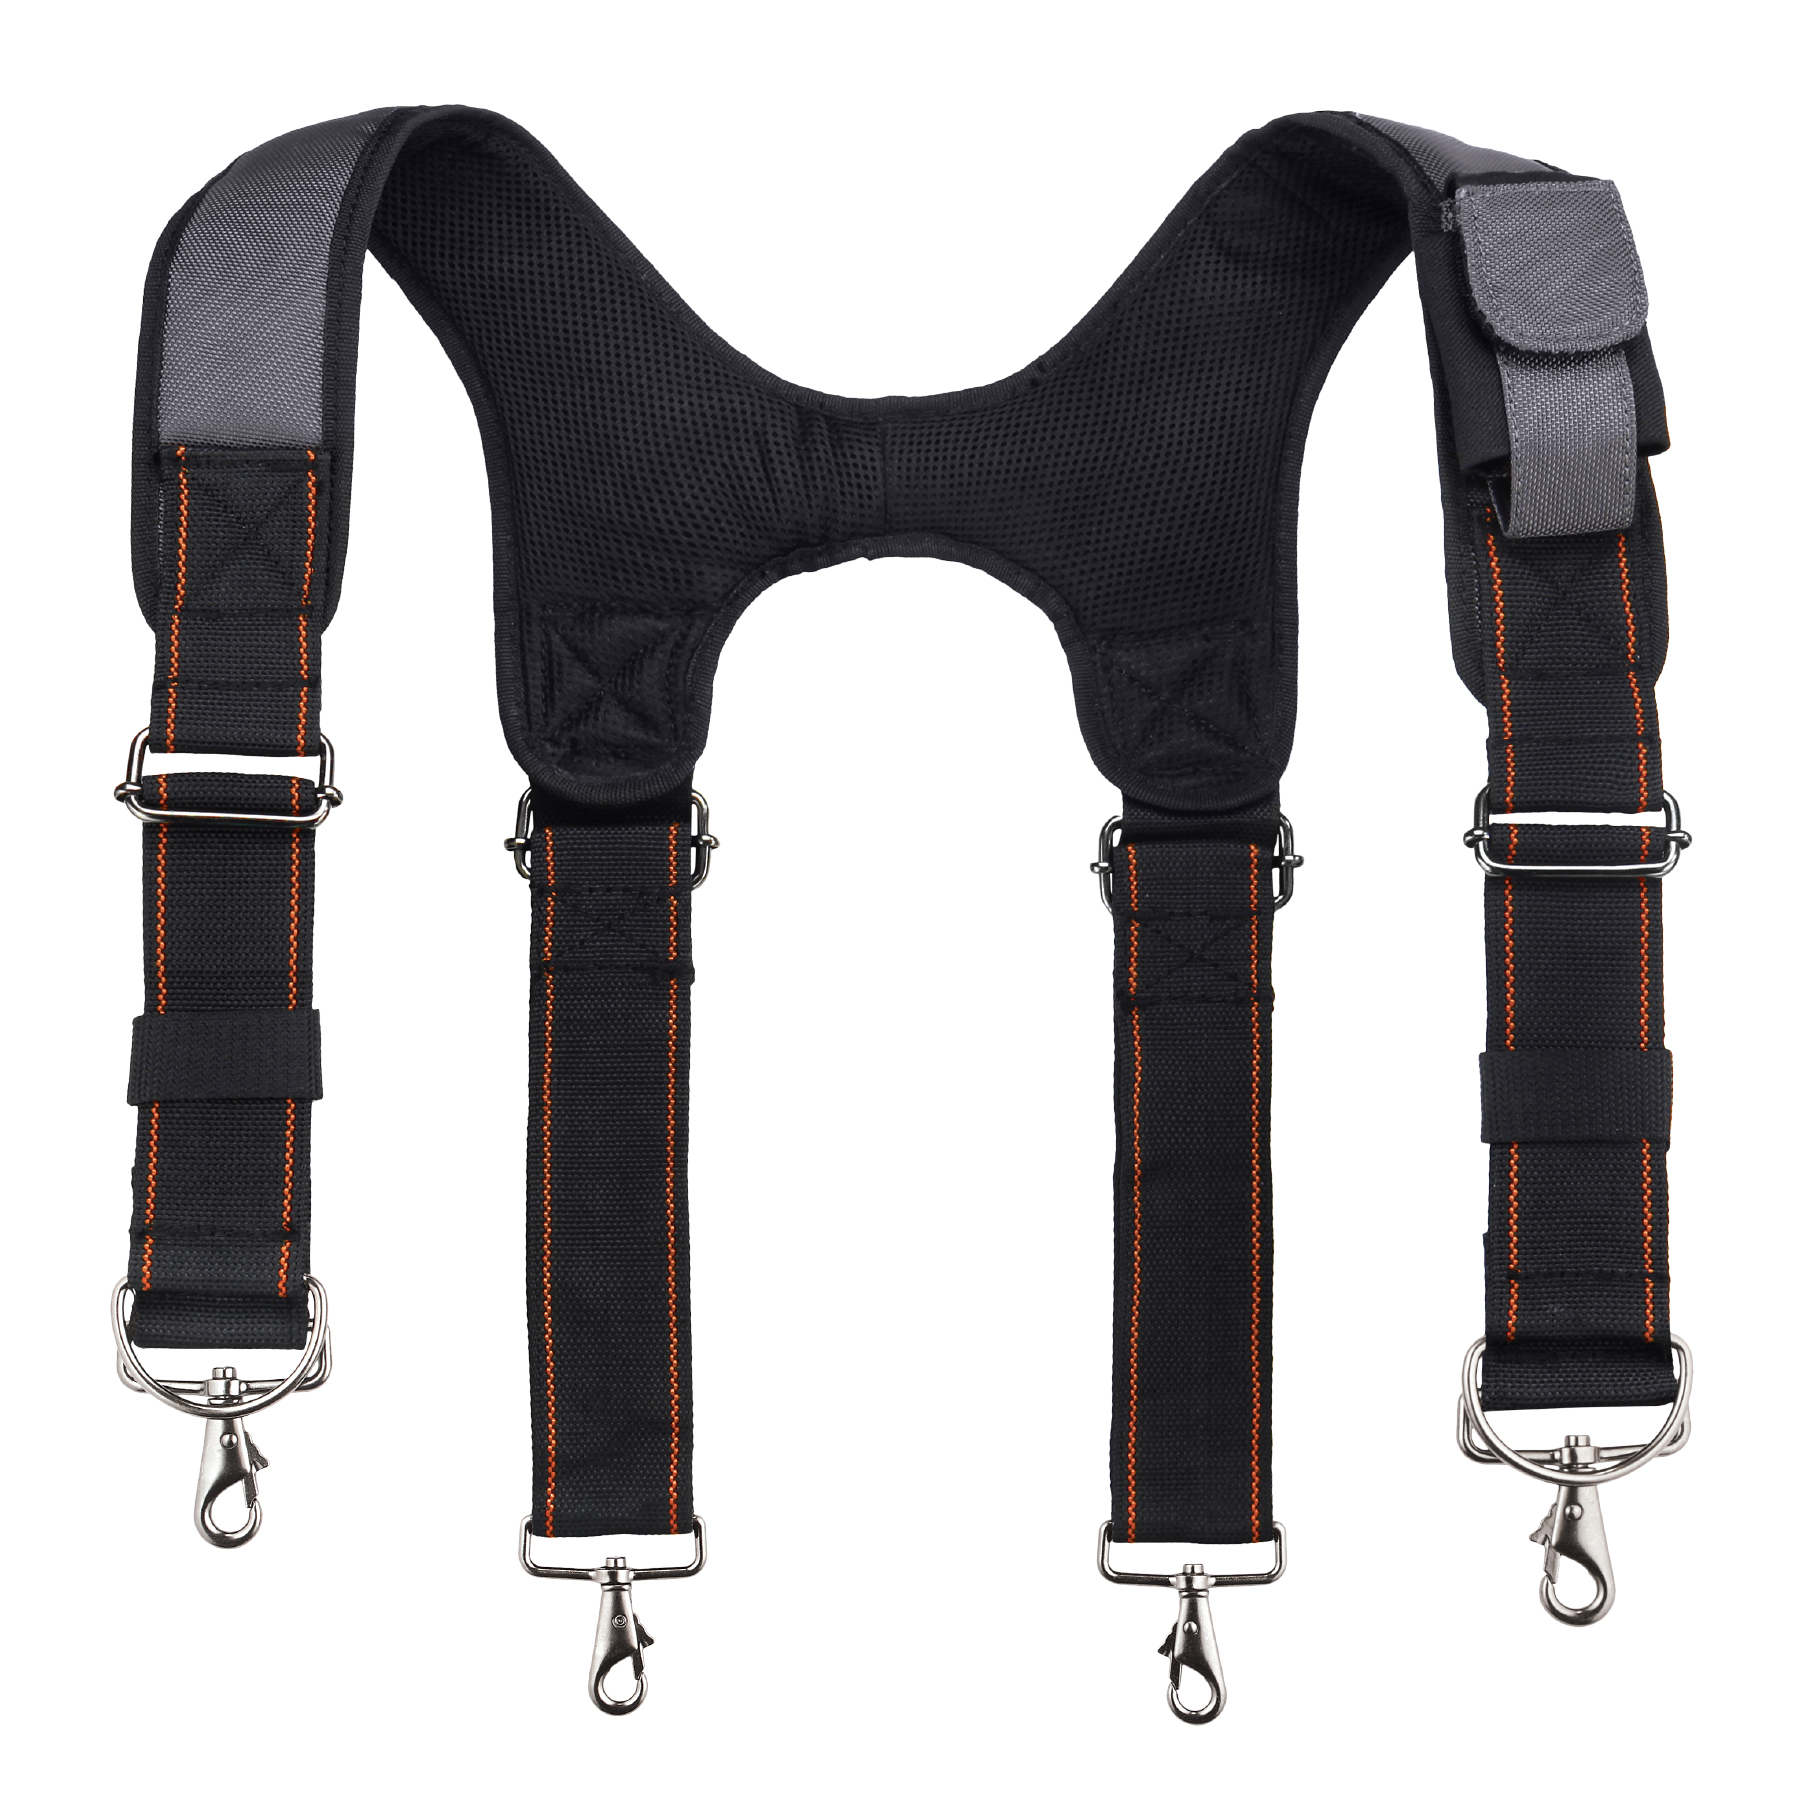 Professional Work Tool Belt Suspenders Multi holders Set KL Series Korea Made 